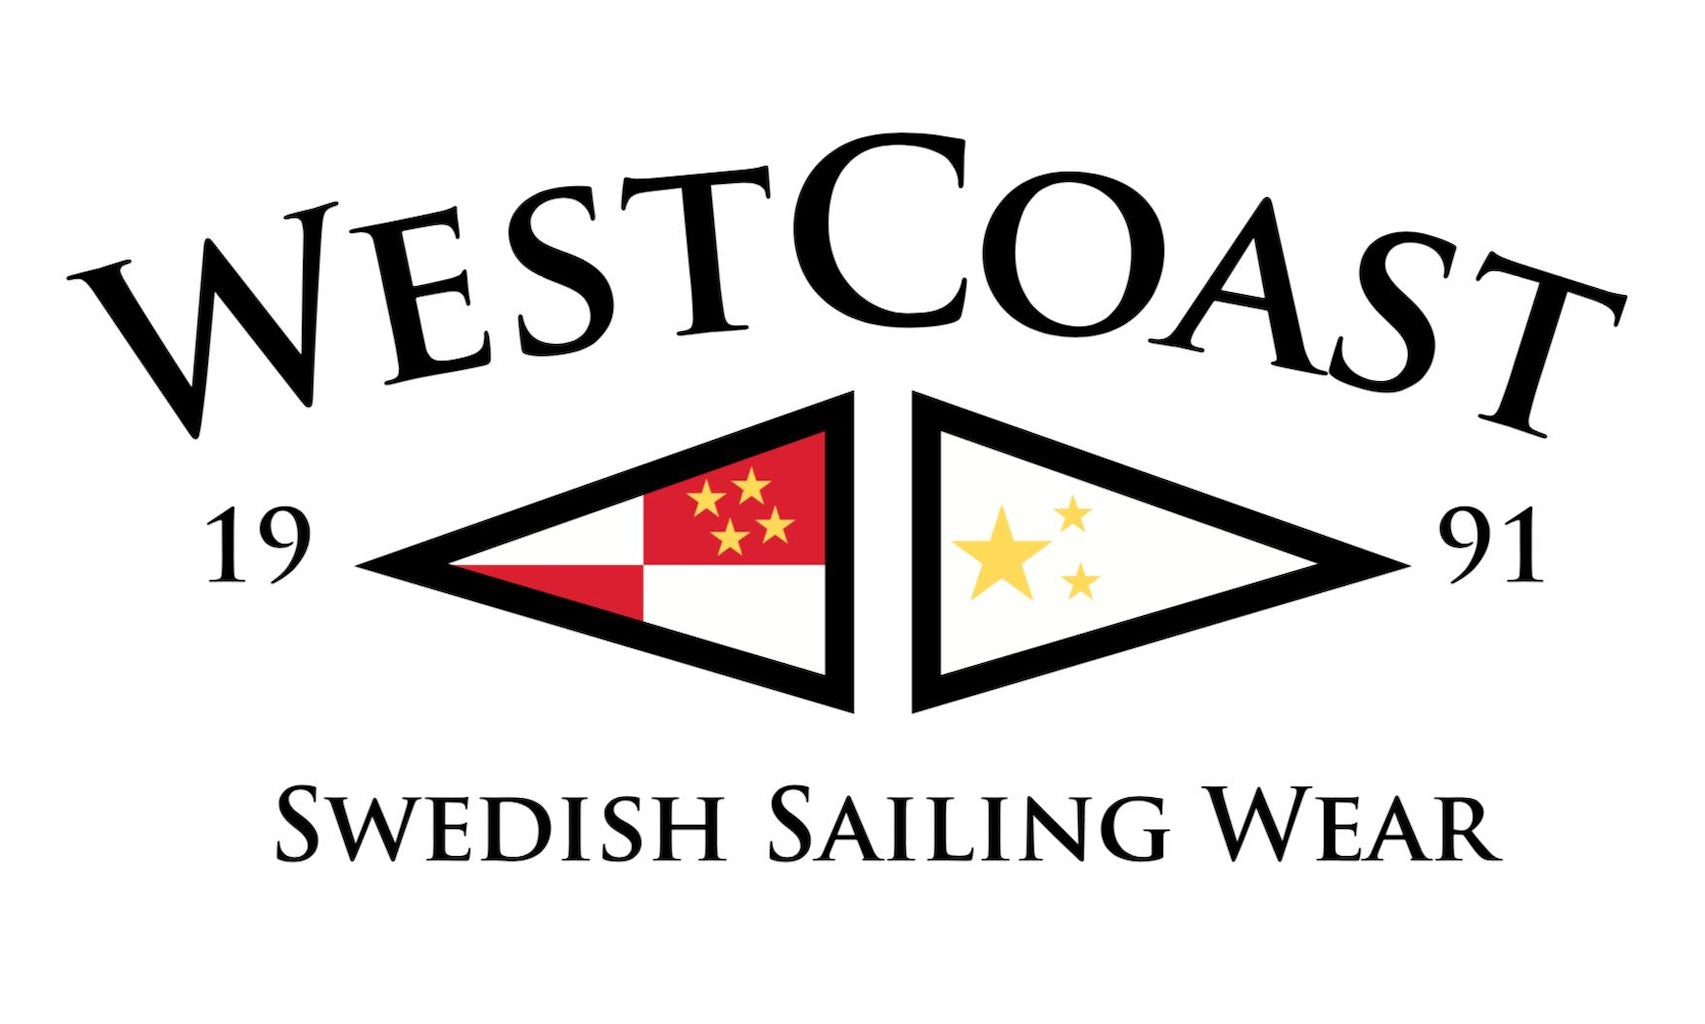 WESTCOAST Swedish Sailingwear